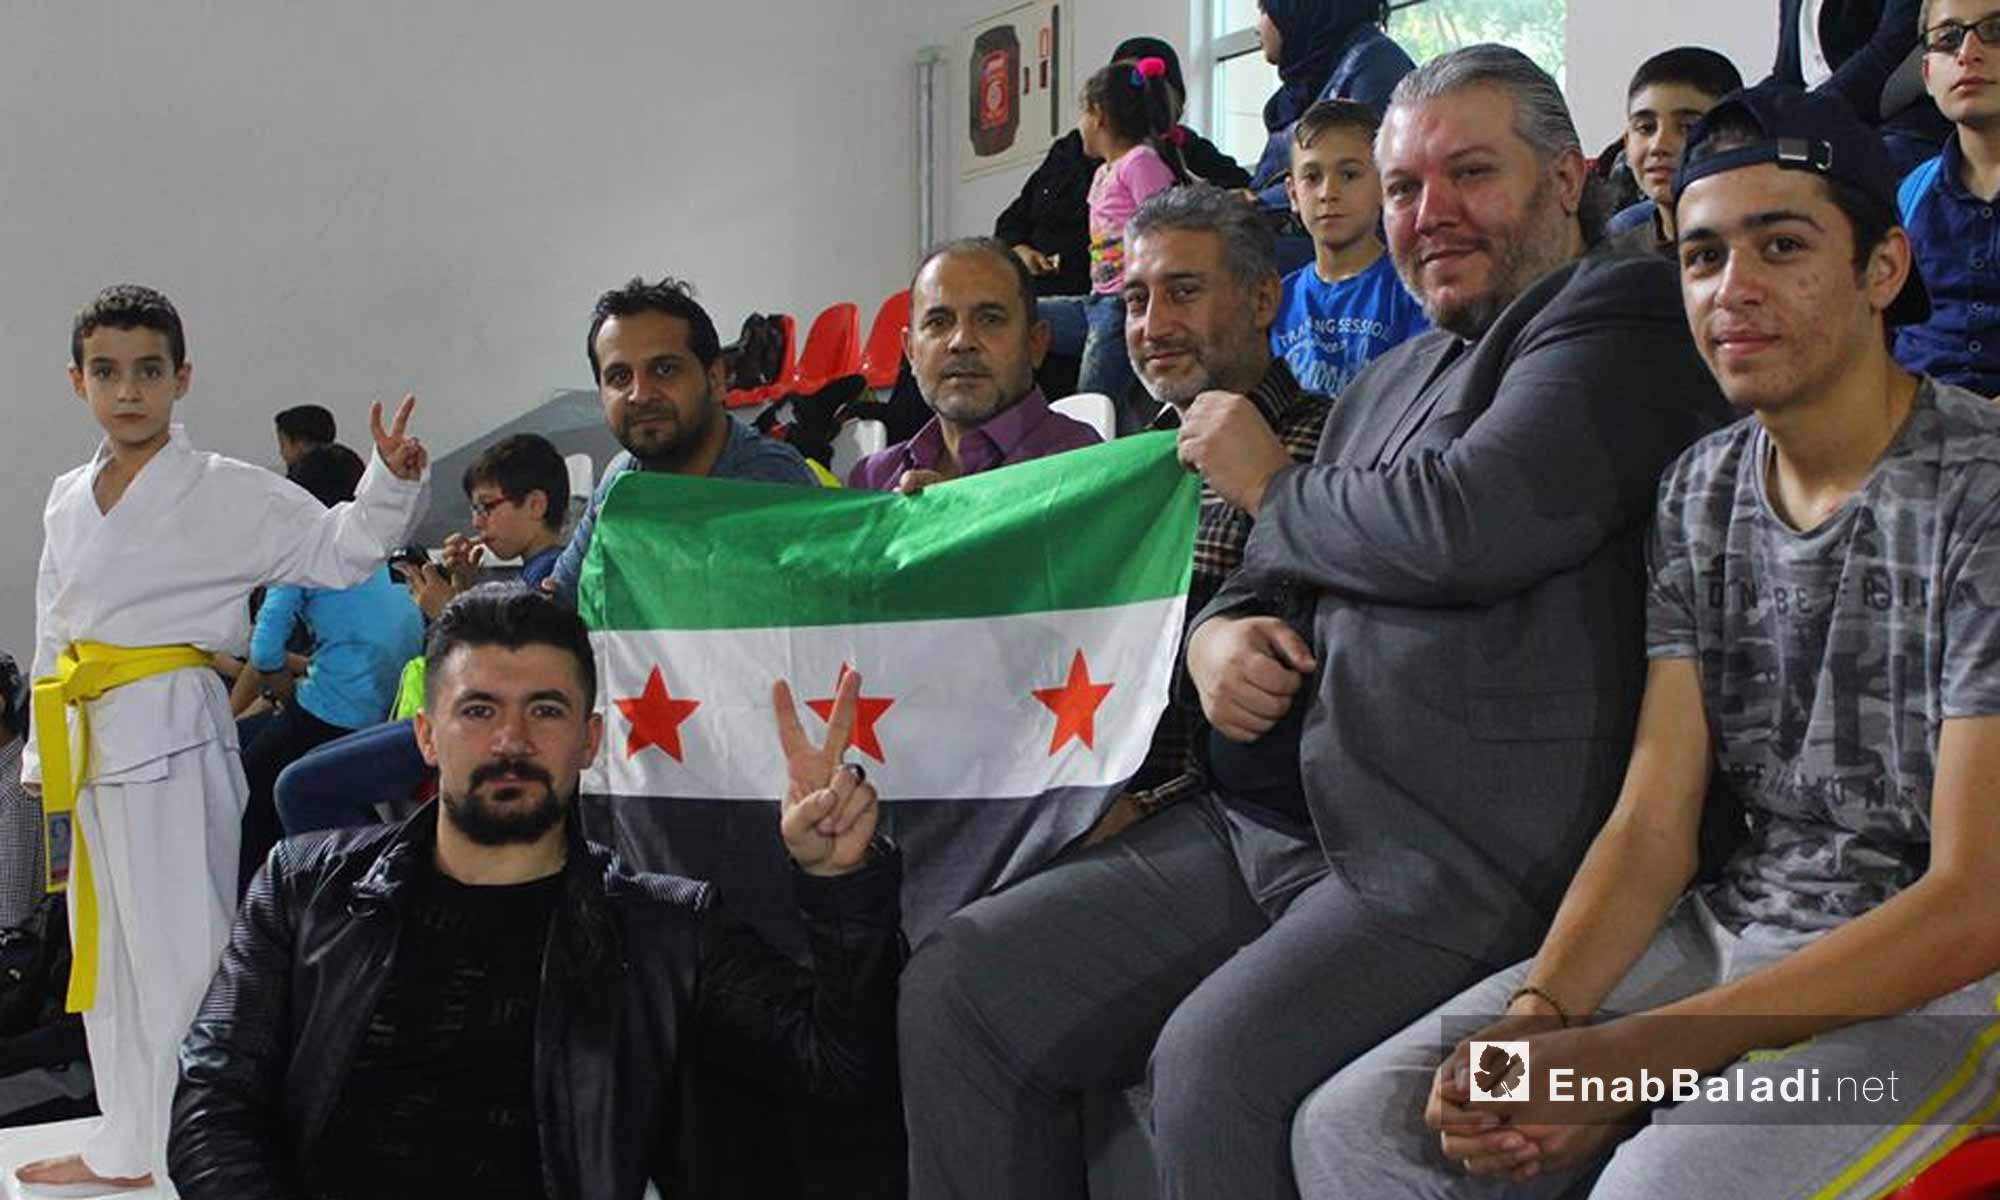 أعضاء "الهيئة السورية للرياضة والشباب" خلال بطولة الجمهورية للكاراتية للأعمار الصغيرة في عنتاب التركية - 15 تشرين الأول 2017 (عنب بلدي)